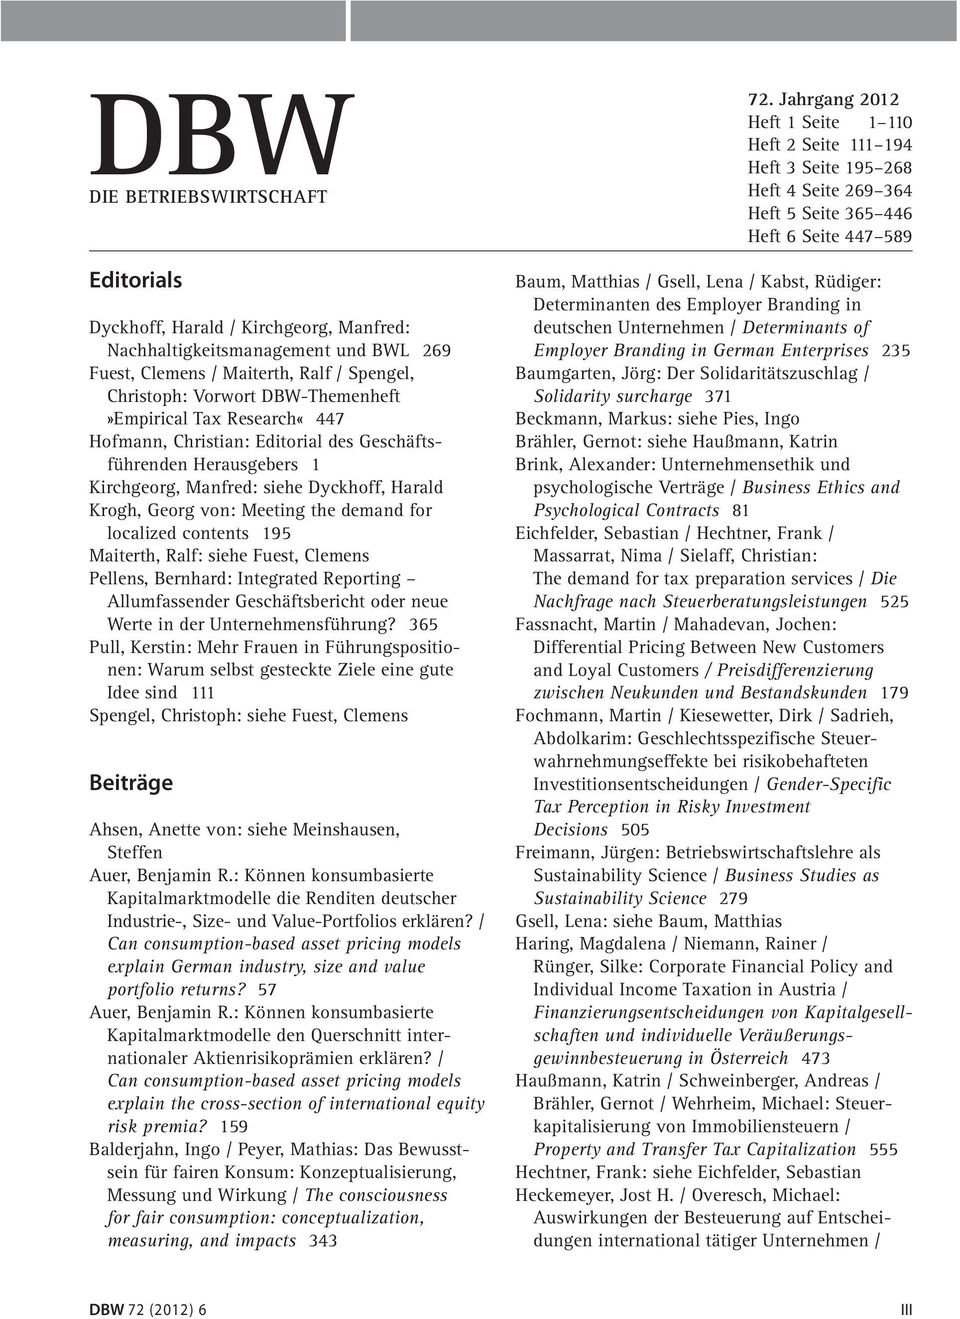 localized contents 195 Maiterth, Ralf: siehe Fuest, Clemens Pellens, Bernhard: Integrated Reporting Allumfassender Geschäftsbericht oder neue Werte in der Unternehmensführung?